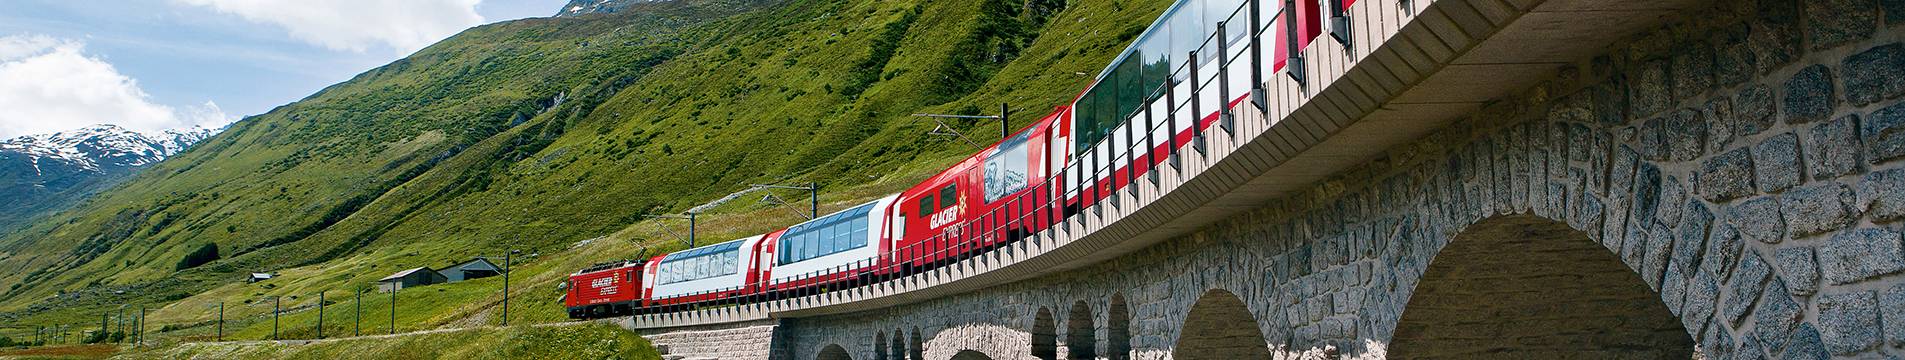 Entdeckt die Schweiz neu: Mit dem Zug entspannt ans Ziel!